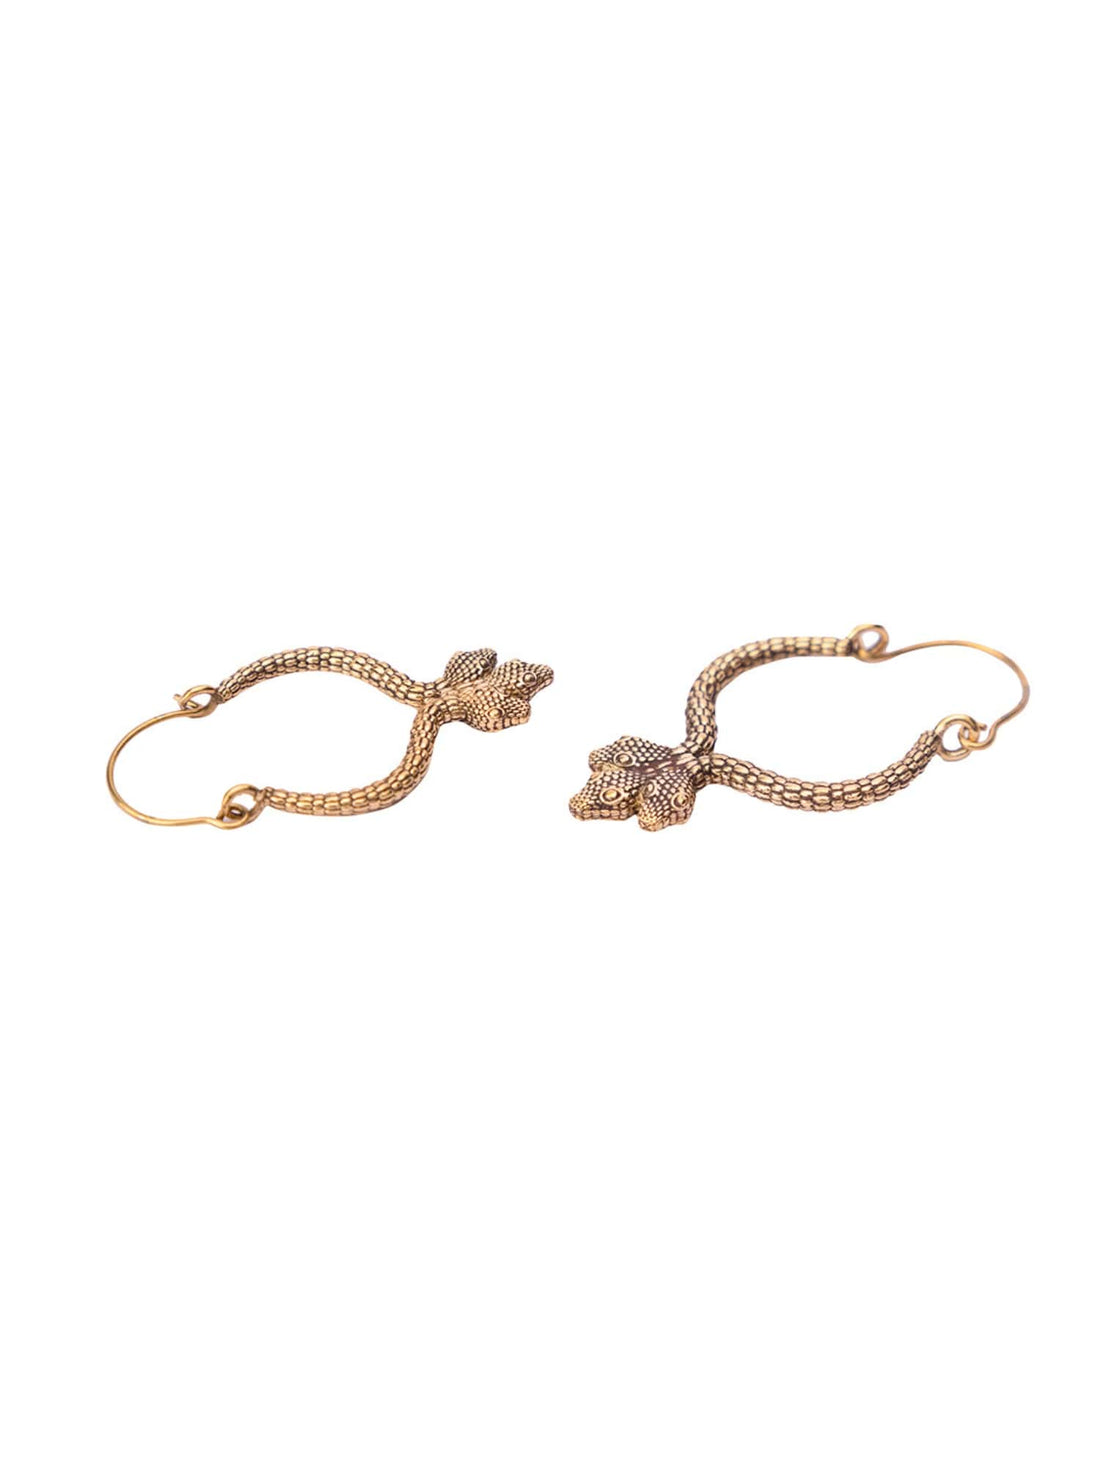 Party Wear Hoops Earrings - Traditional Gold-Plated Brass Earrings By Studio One Love